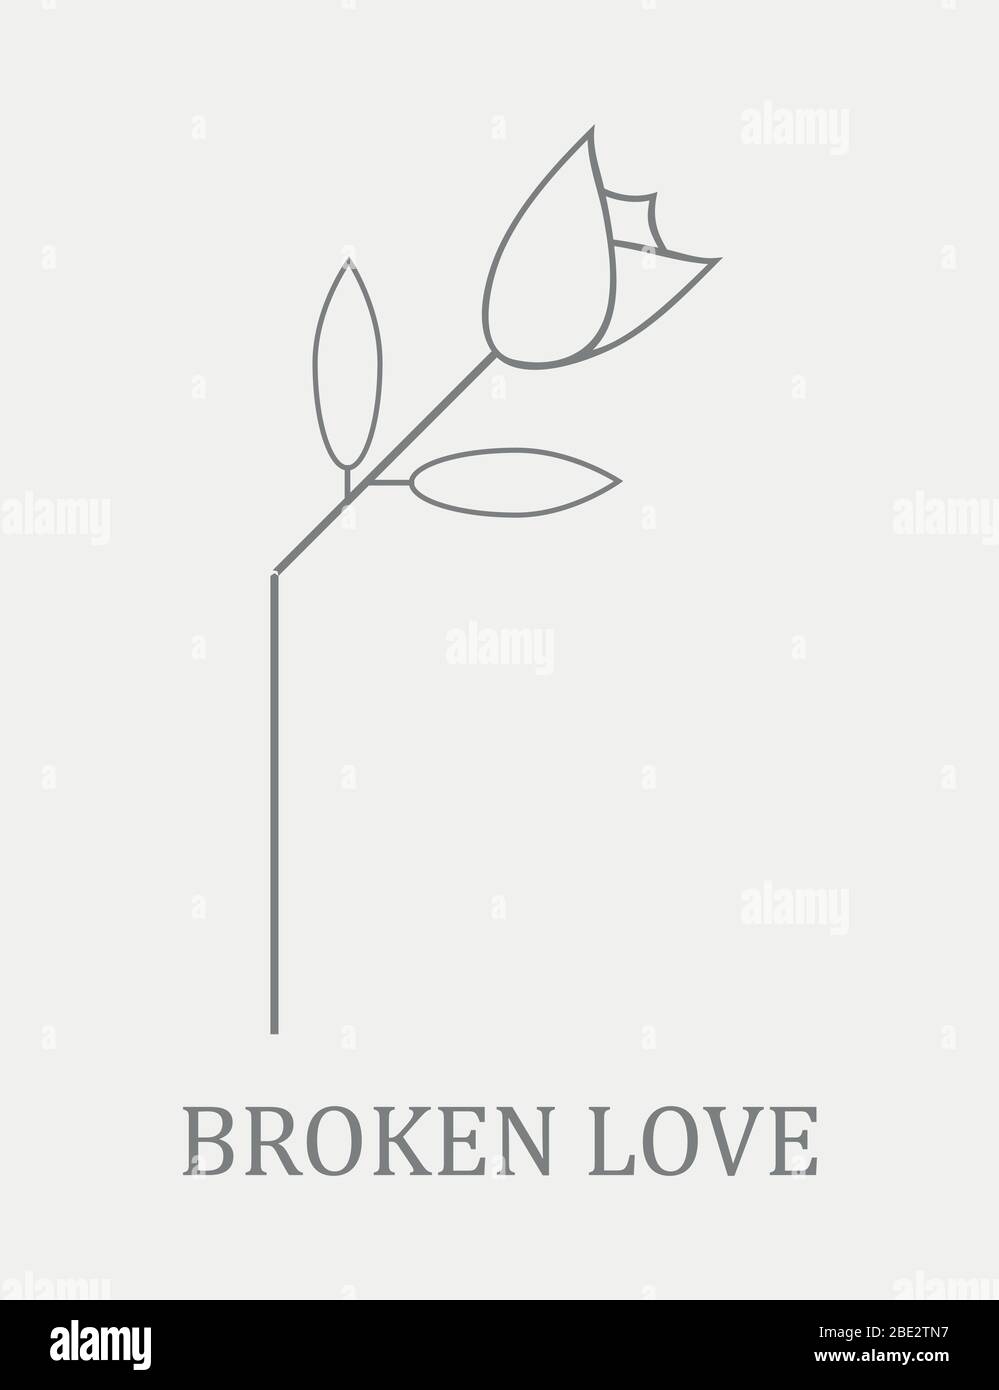 Broken Rose, Symbol für gebrochene Liebe oder Freundschaft, grau und weiß Minimalismus Vektor-Illustration Logo mit Copy Space Stock Vektor